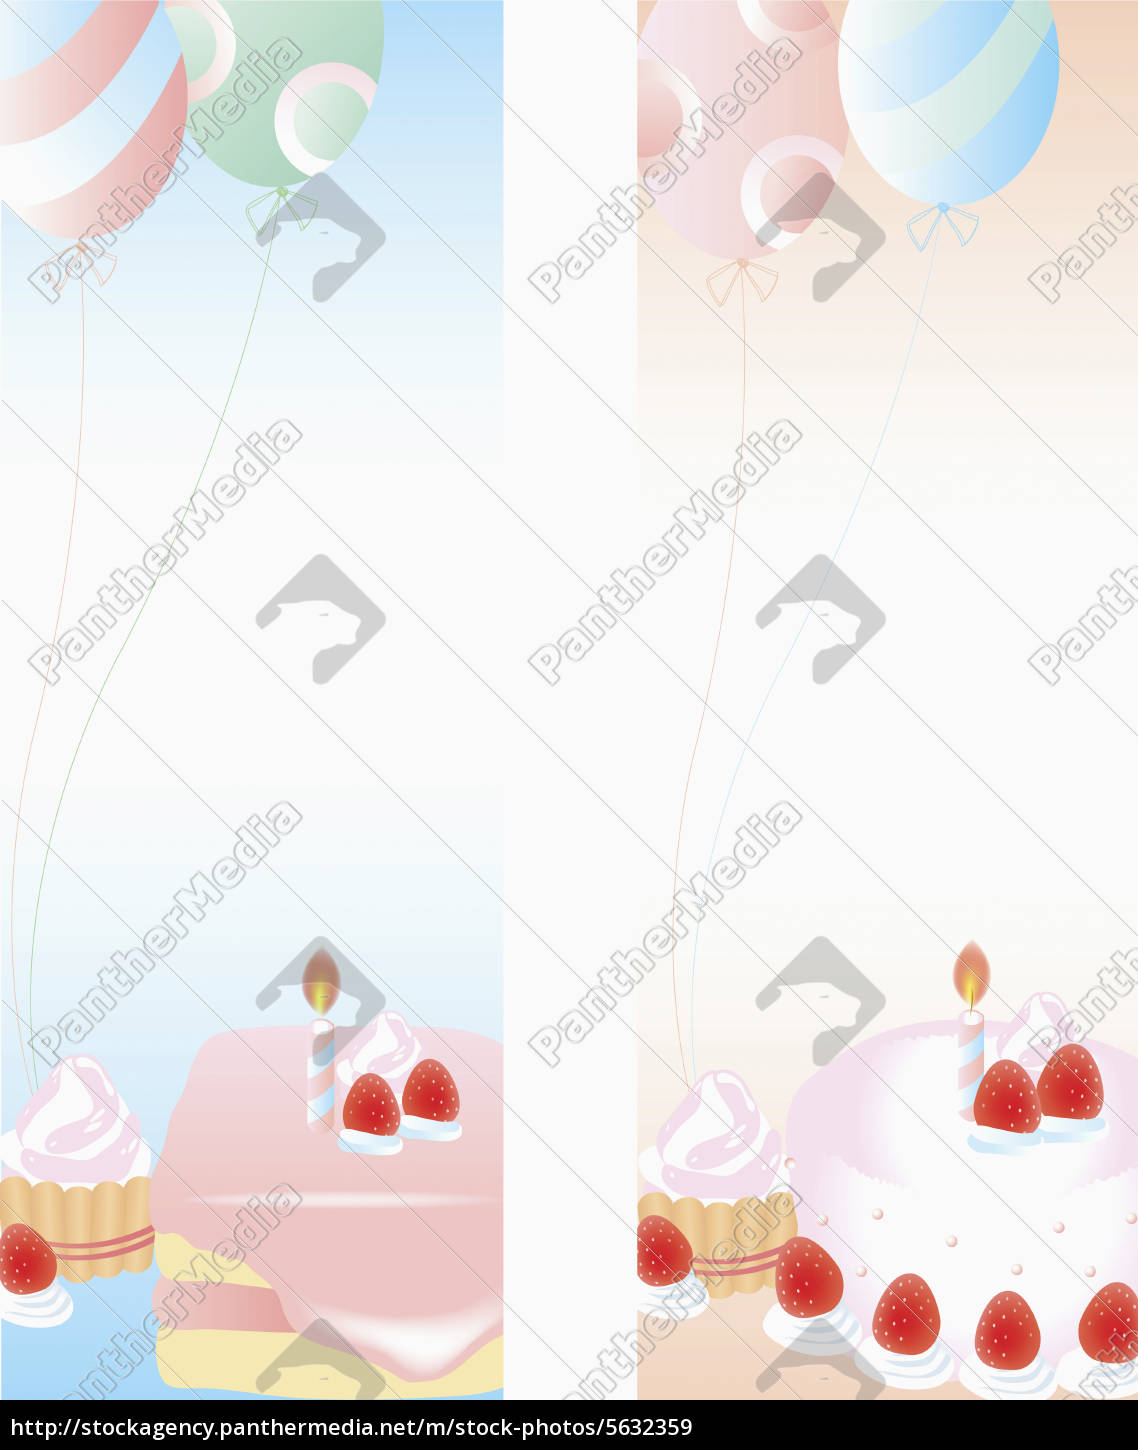 Kerze Kuchen Ballon Luftballon Erdbeere Transparent Stockfoto Bildagentur Panthermedia